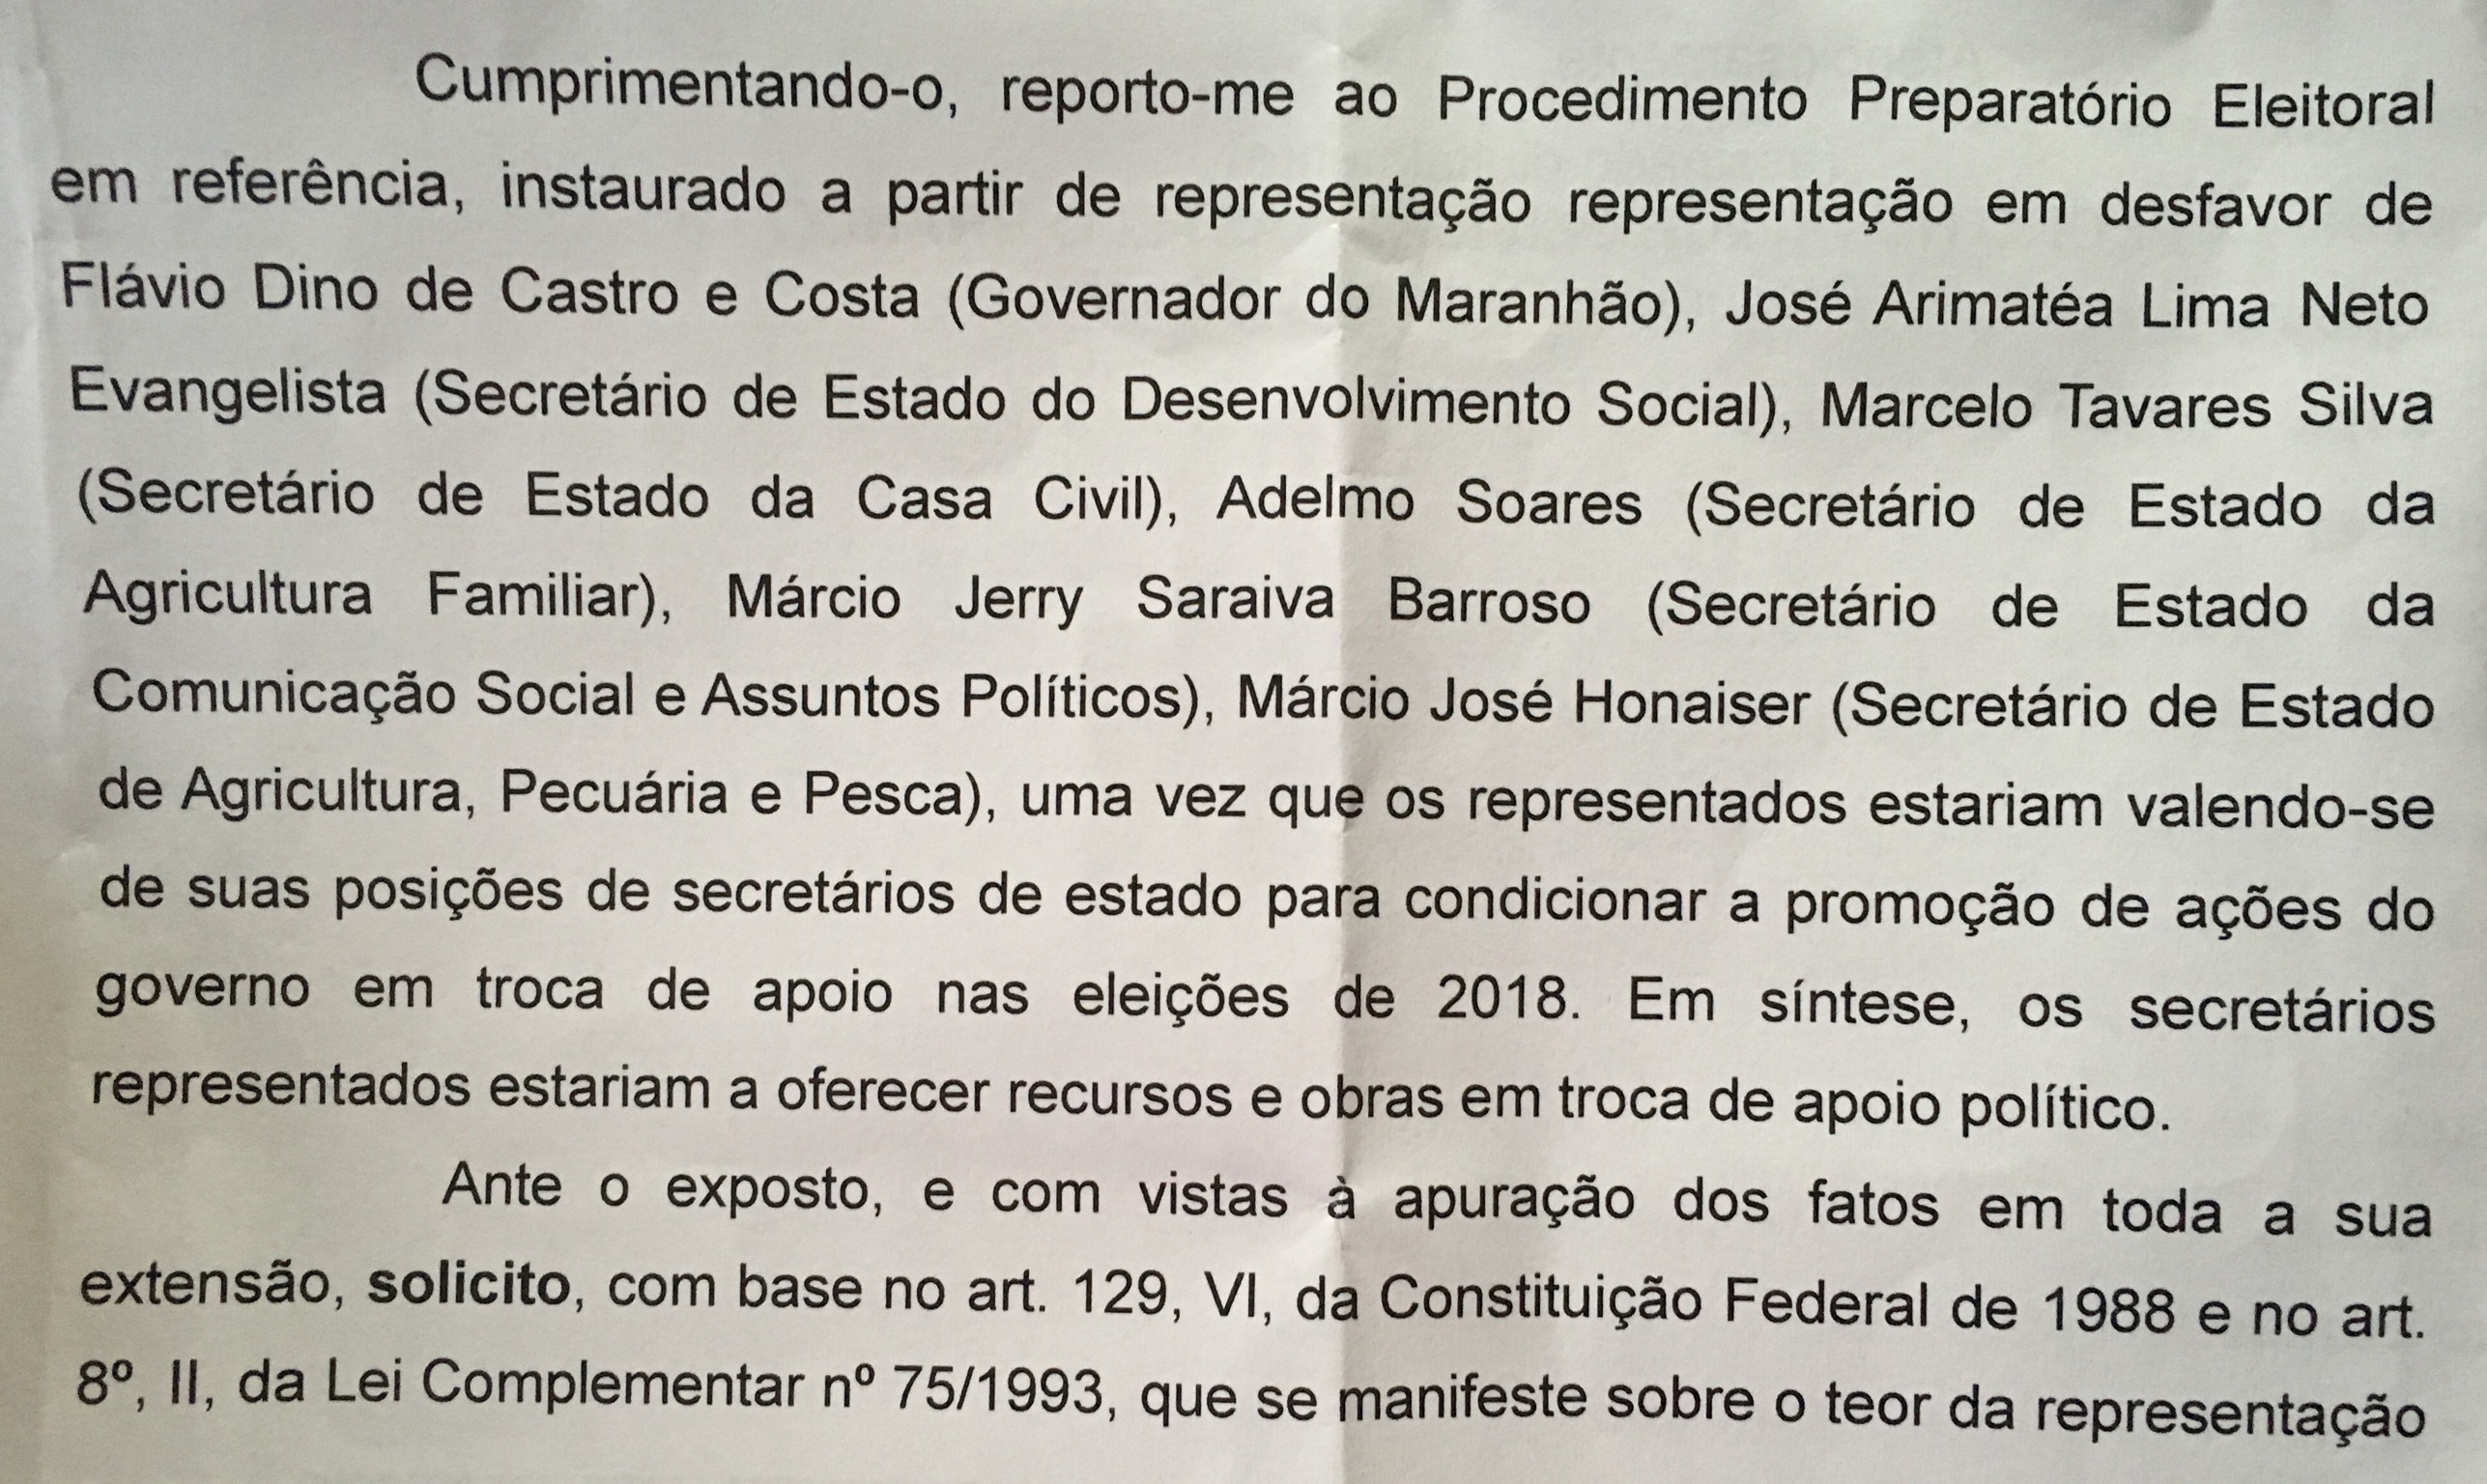 Documento obtido pelo blog mostra os nomes dos secretários e governador que são alvo de investigação.